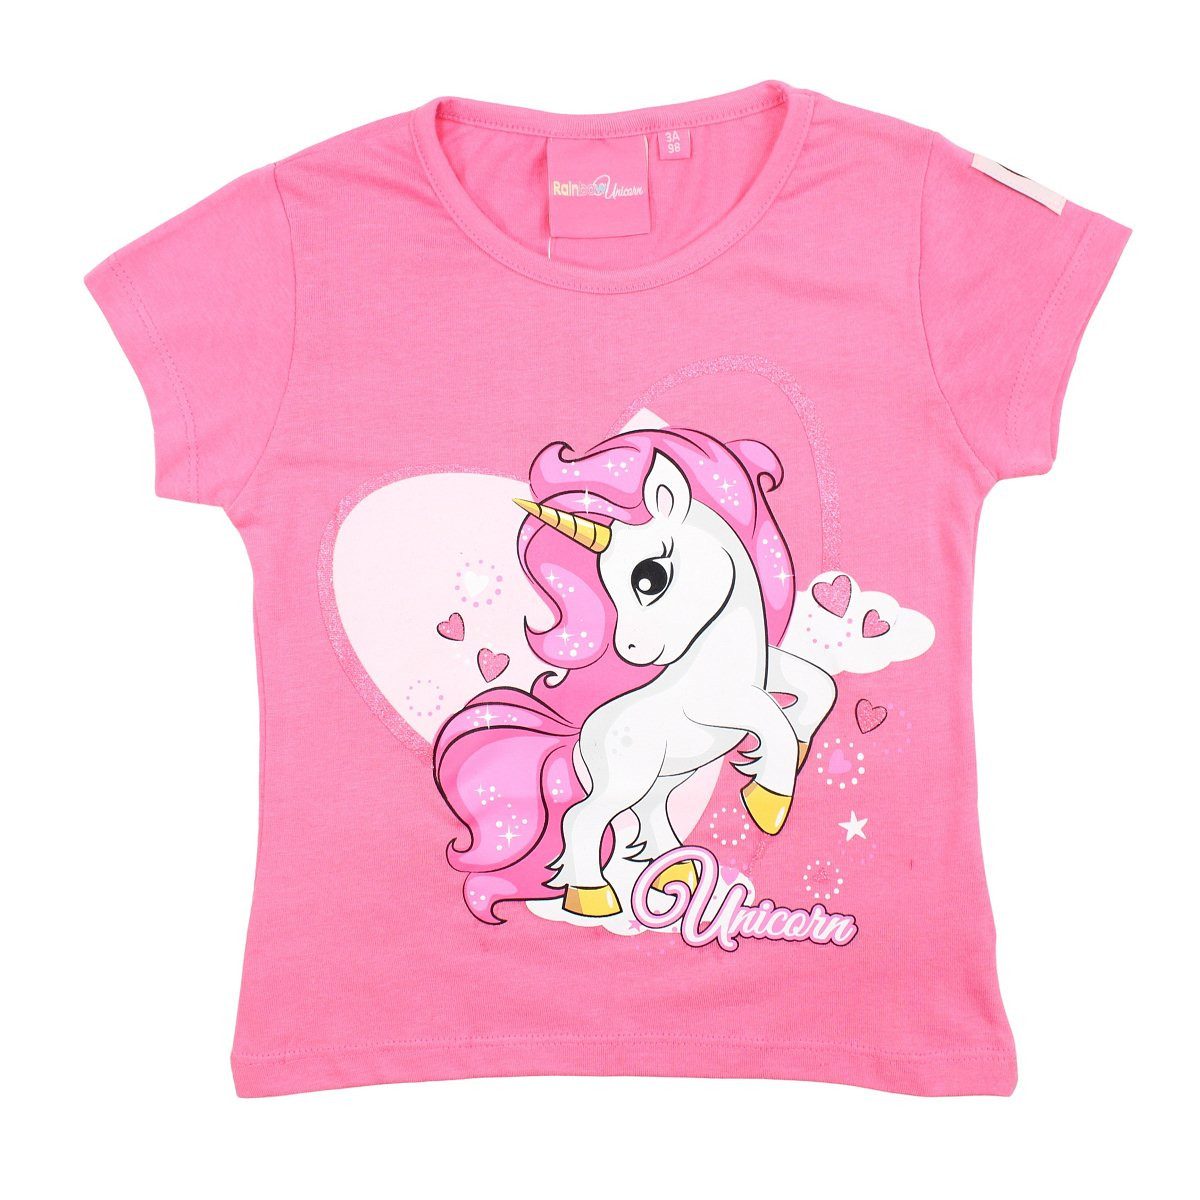 WS-Trend Print-Shirt Sweet Einhorn Unicorn Mädchen Kinder T-Shirt Gr. 98 bis 128, reine Baumwolle